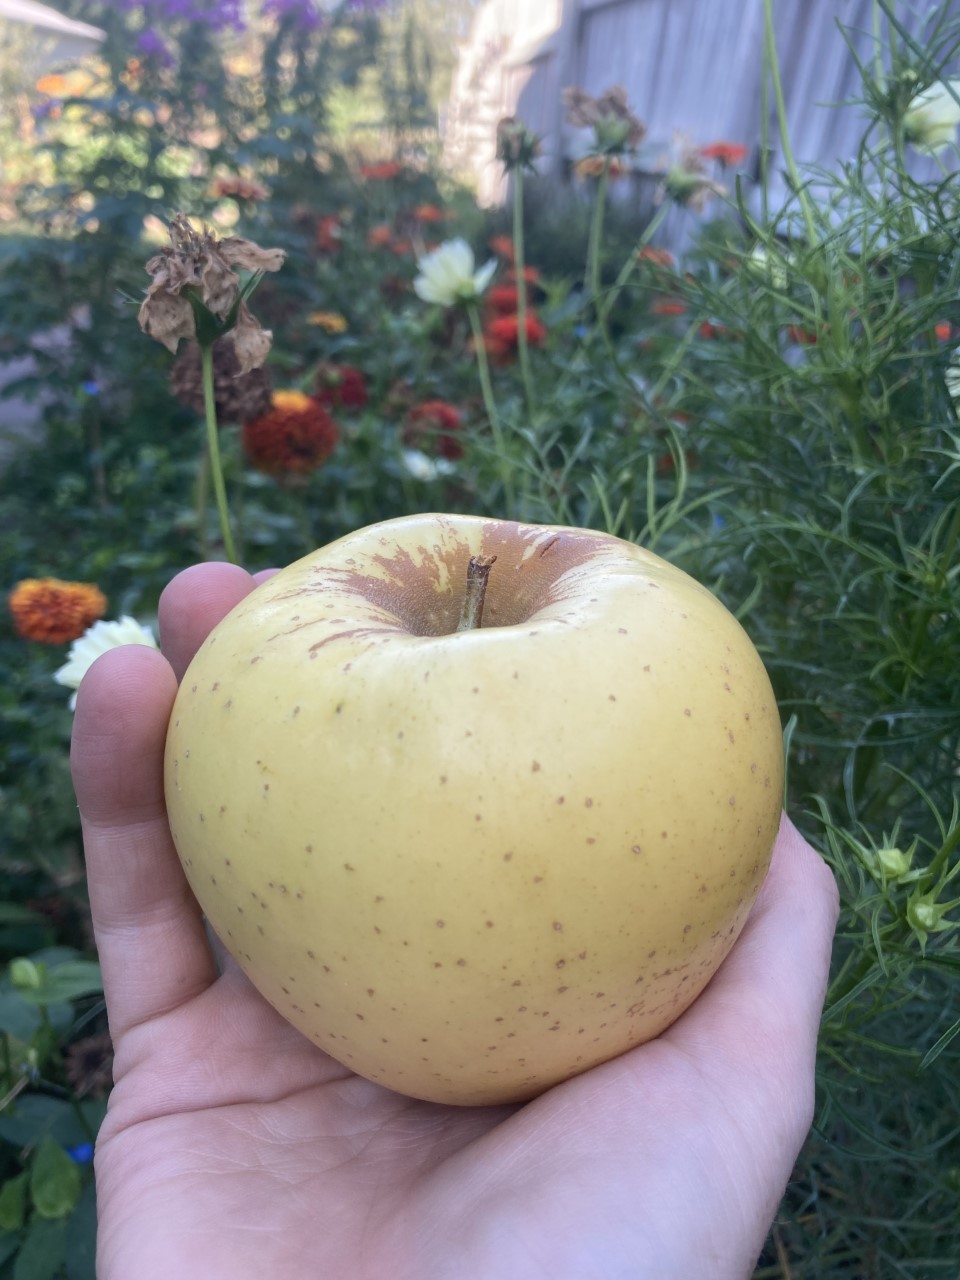 Apples in Nebraska / October 8, 2021